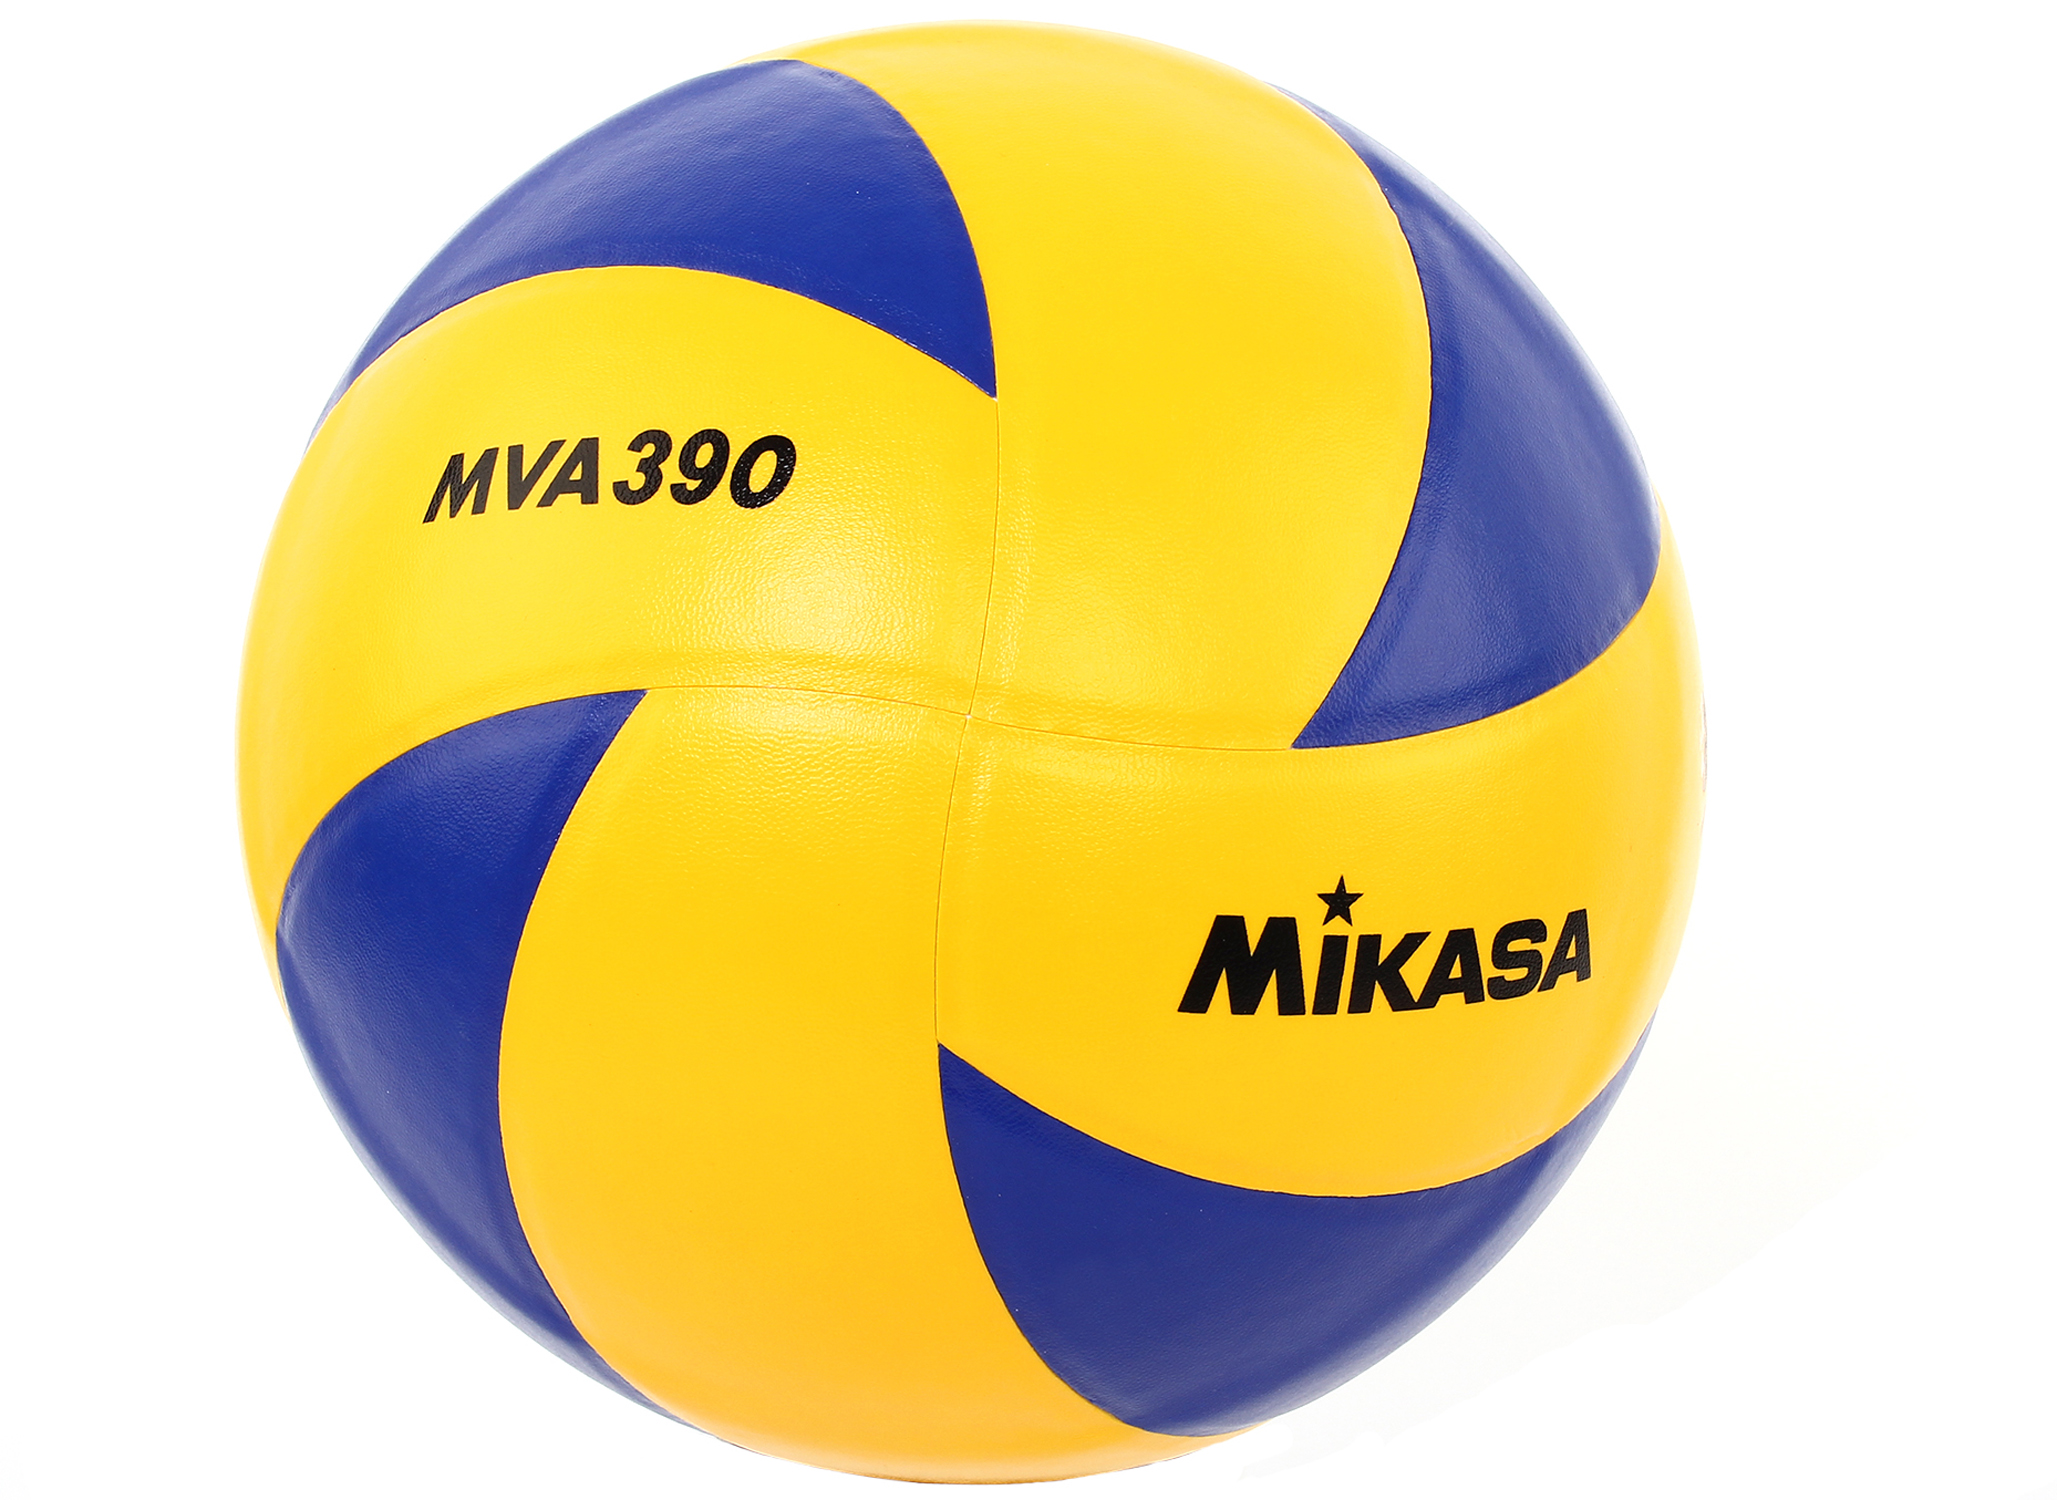 фото Волейбольный мяч mikasa mva390 №5 blue/yellow